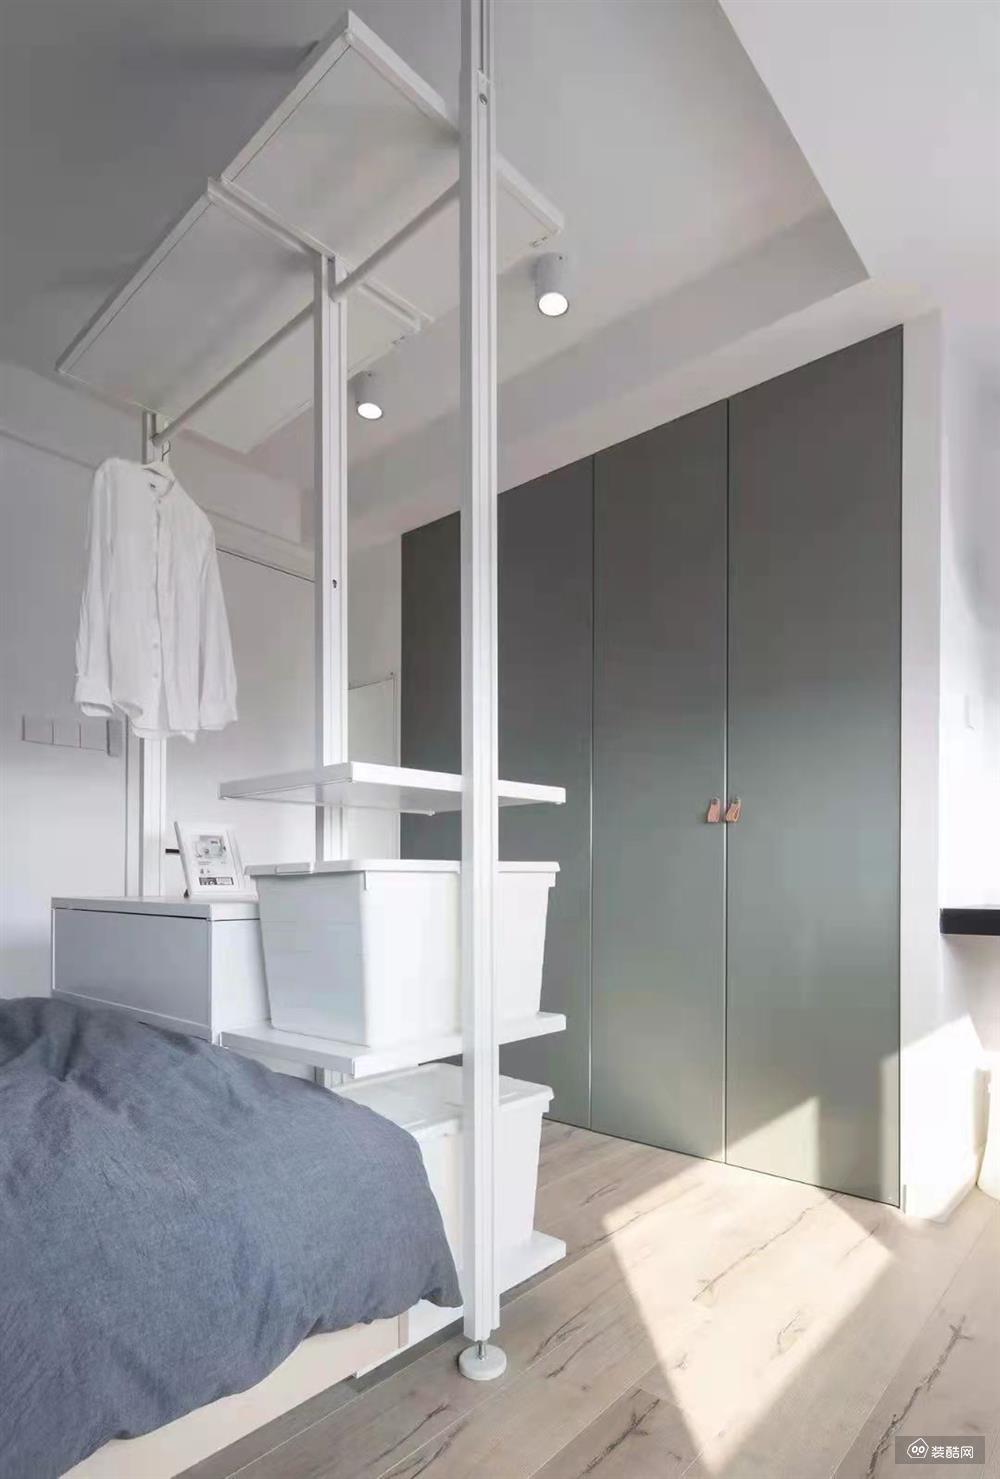 嵌入式衣柜的设计搭配床尾处的储物箱+衣架，满足了卧室衣物收纳的需求。